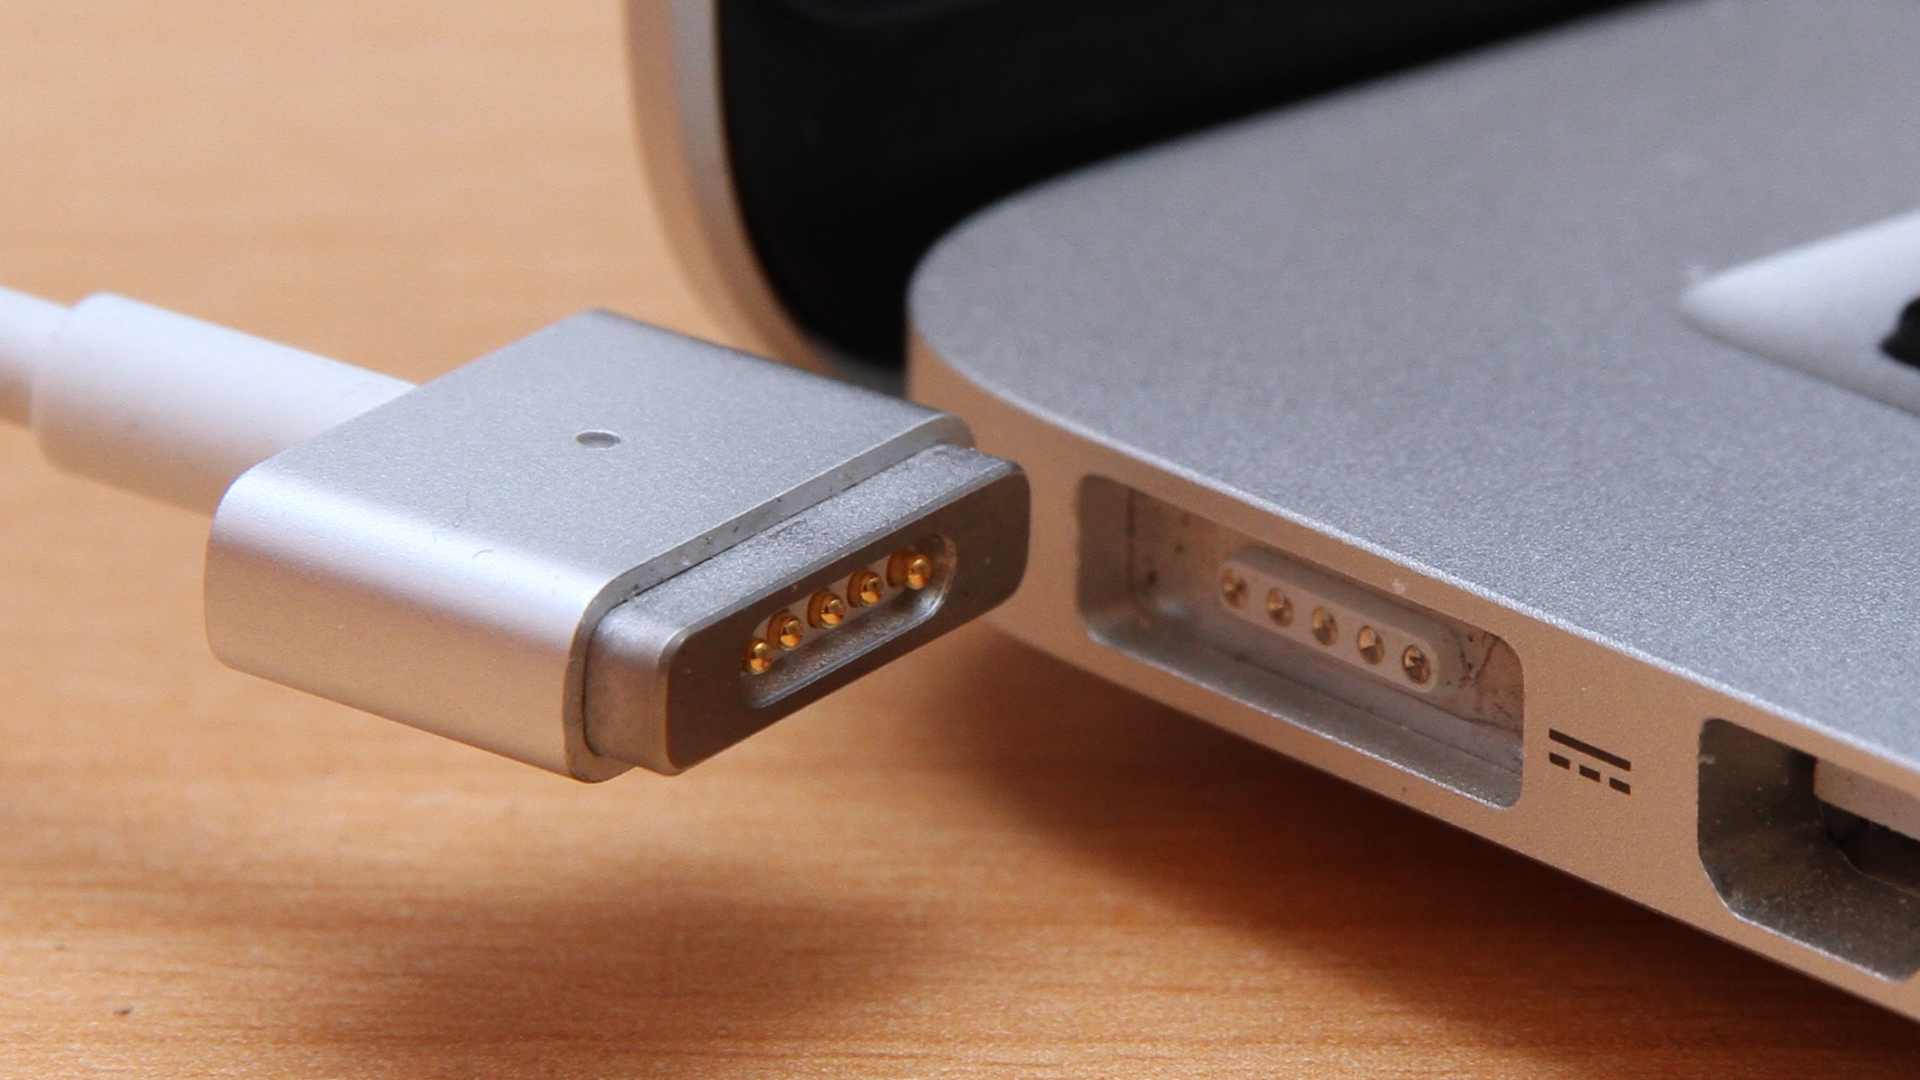 Astuce Comment recharger son macbook sans chargeur APPLE ?